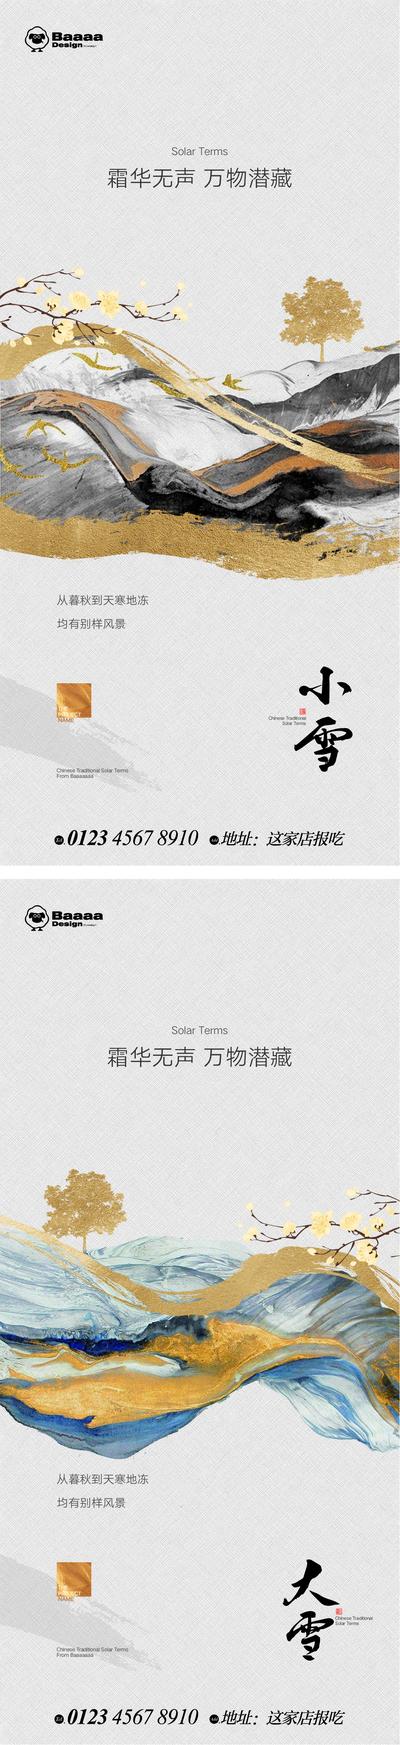 【南门网】广告 海报 地产 节气 小雪 大雪书法 意境 肌理 背景 精致 刷屏